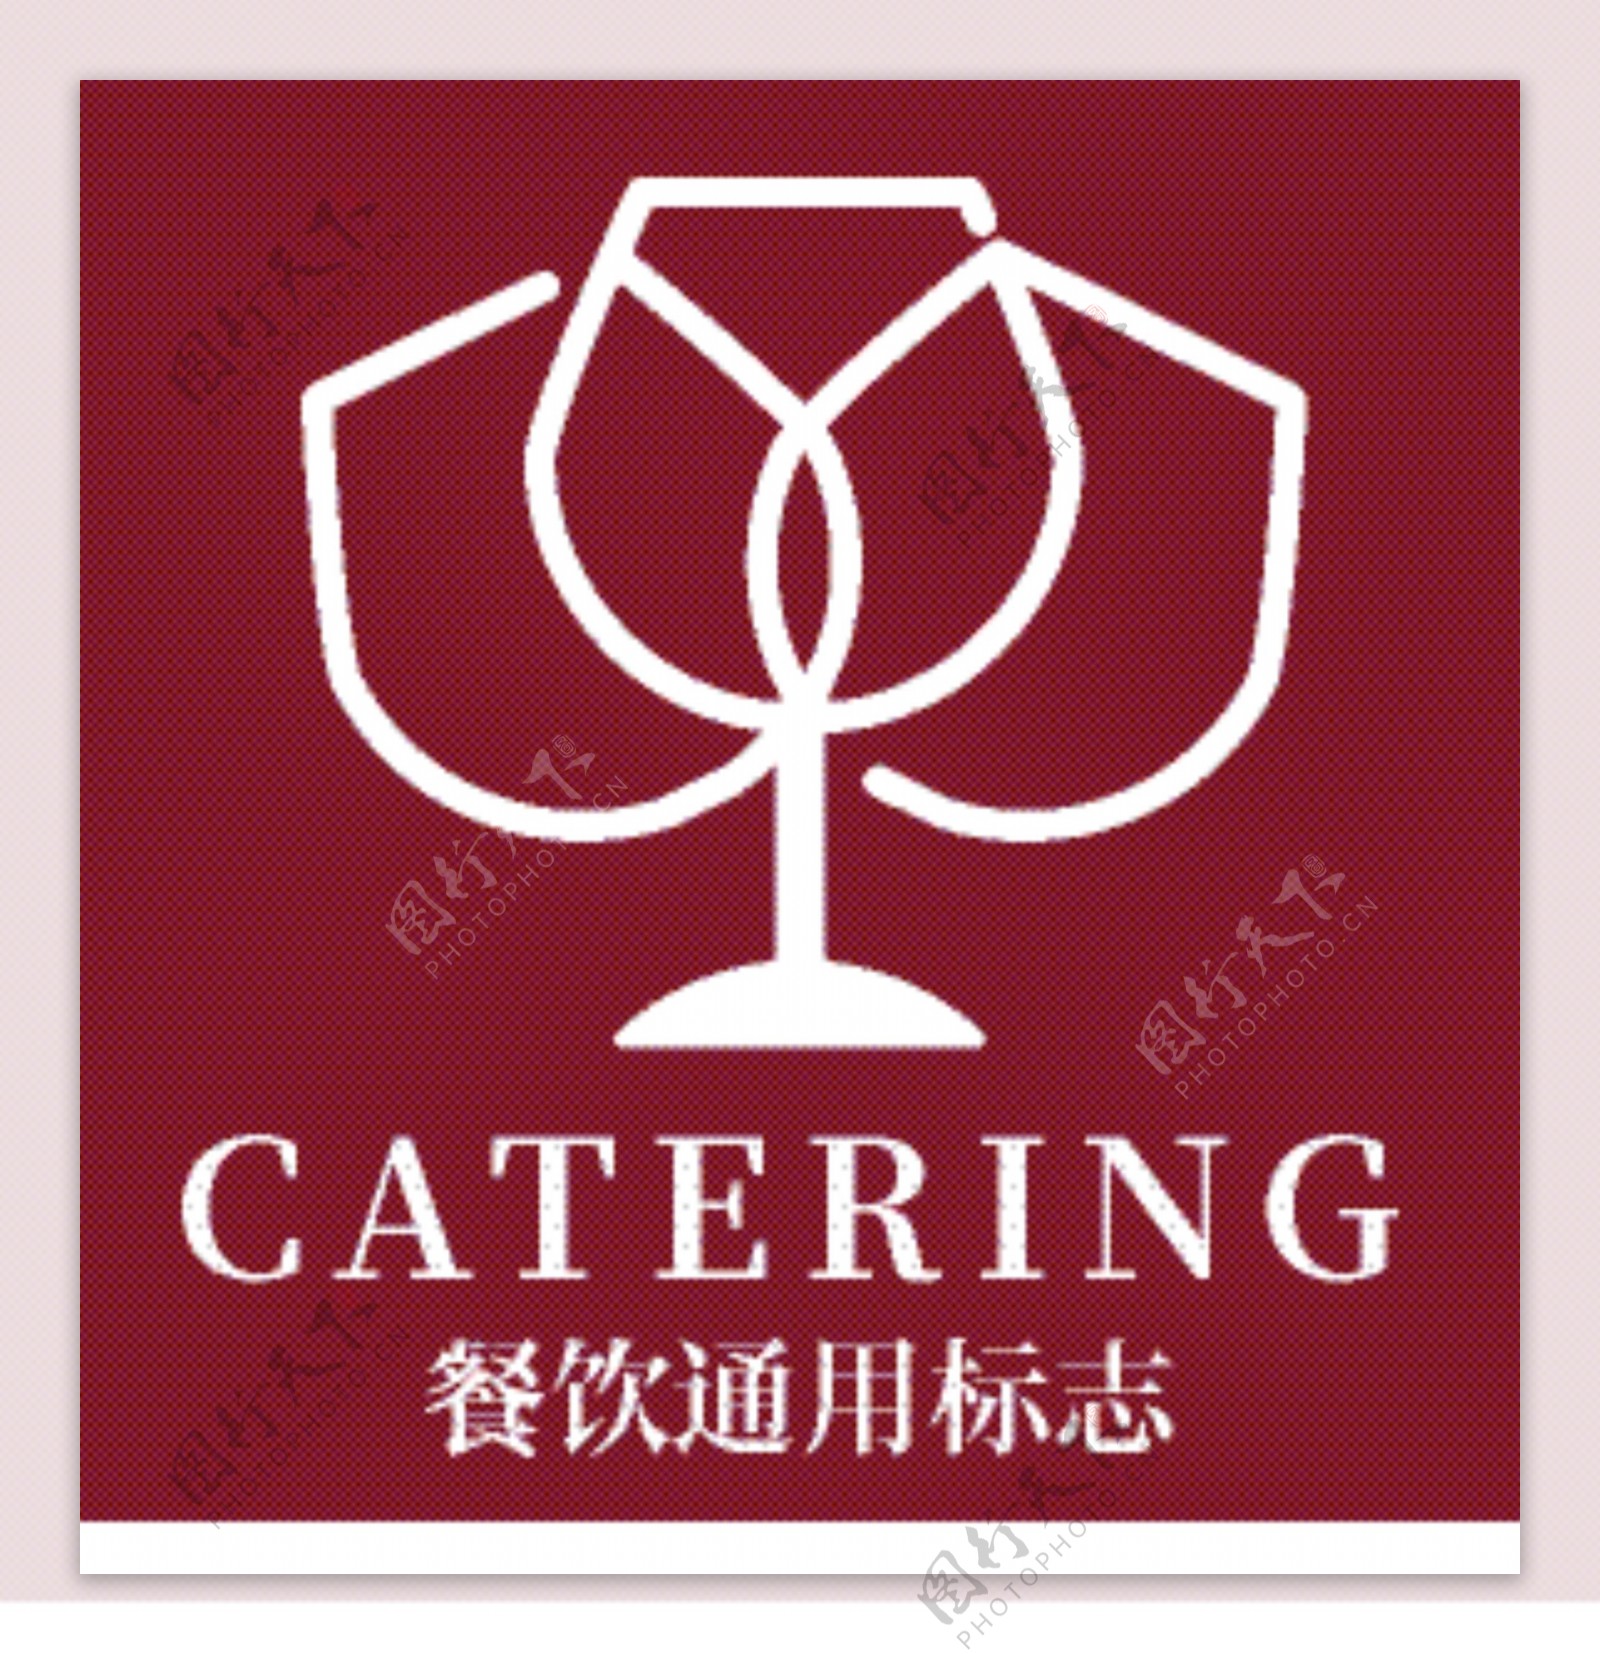 餐饮酒杯线条酒杯标志通用餐饮logo